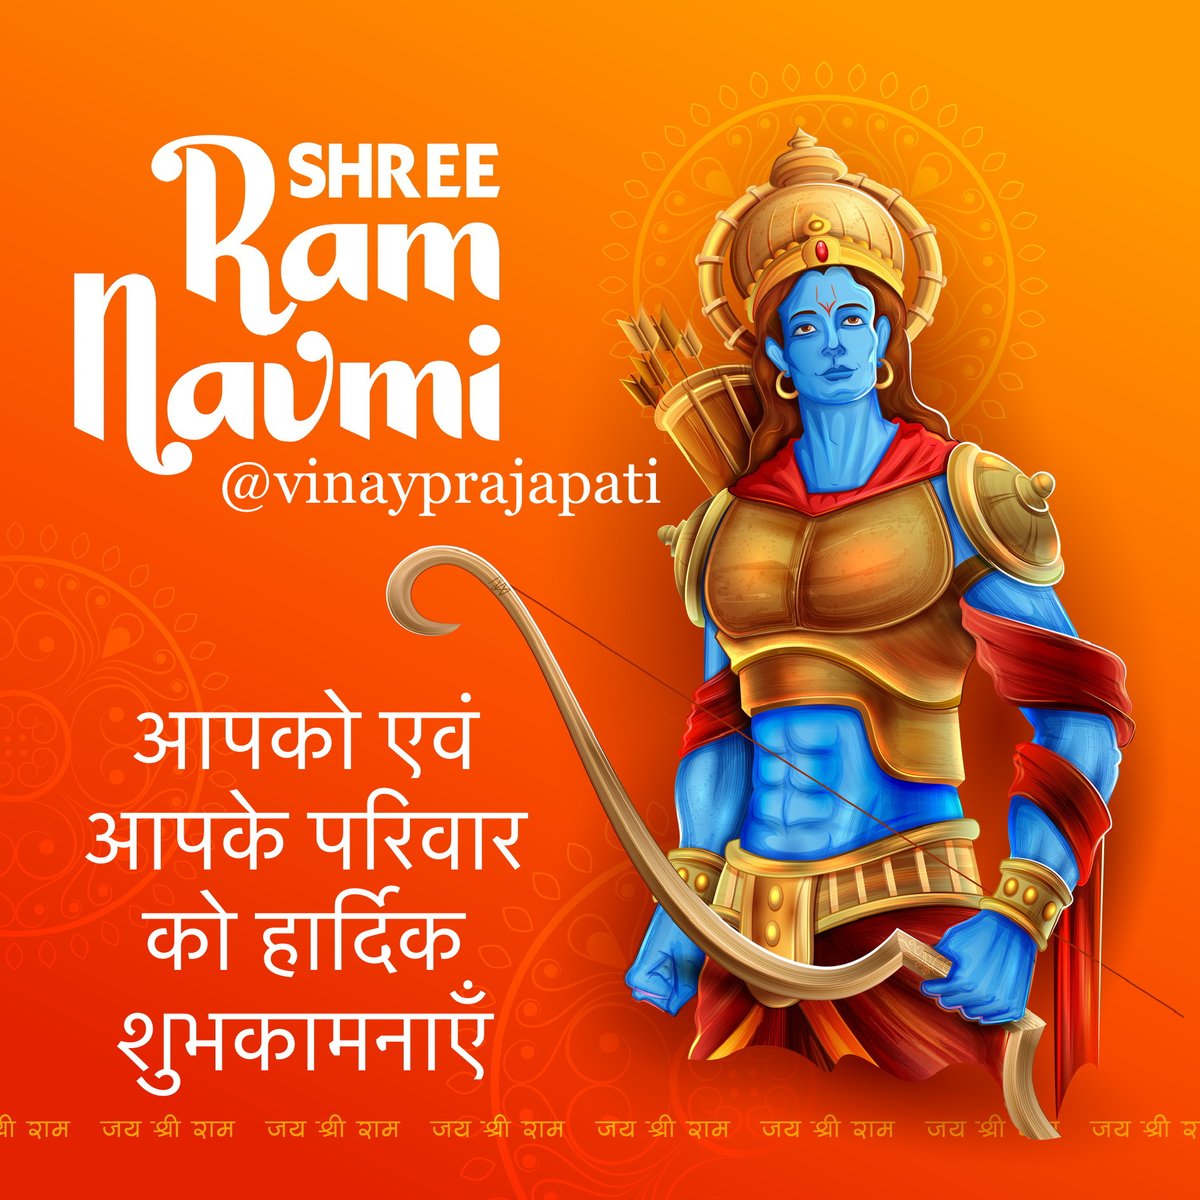 श्री राम नवमी की आपको अनेक शुभकामनाएँ #shreeramnavmi #ramnavmi #jaishreeram #festival